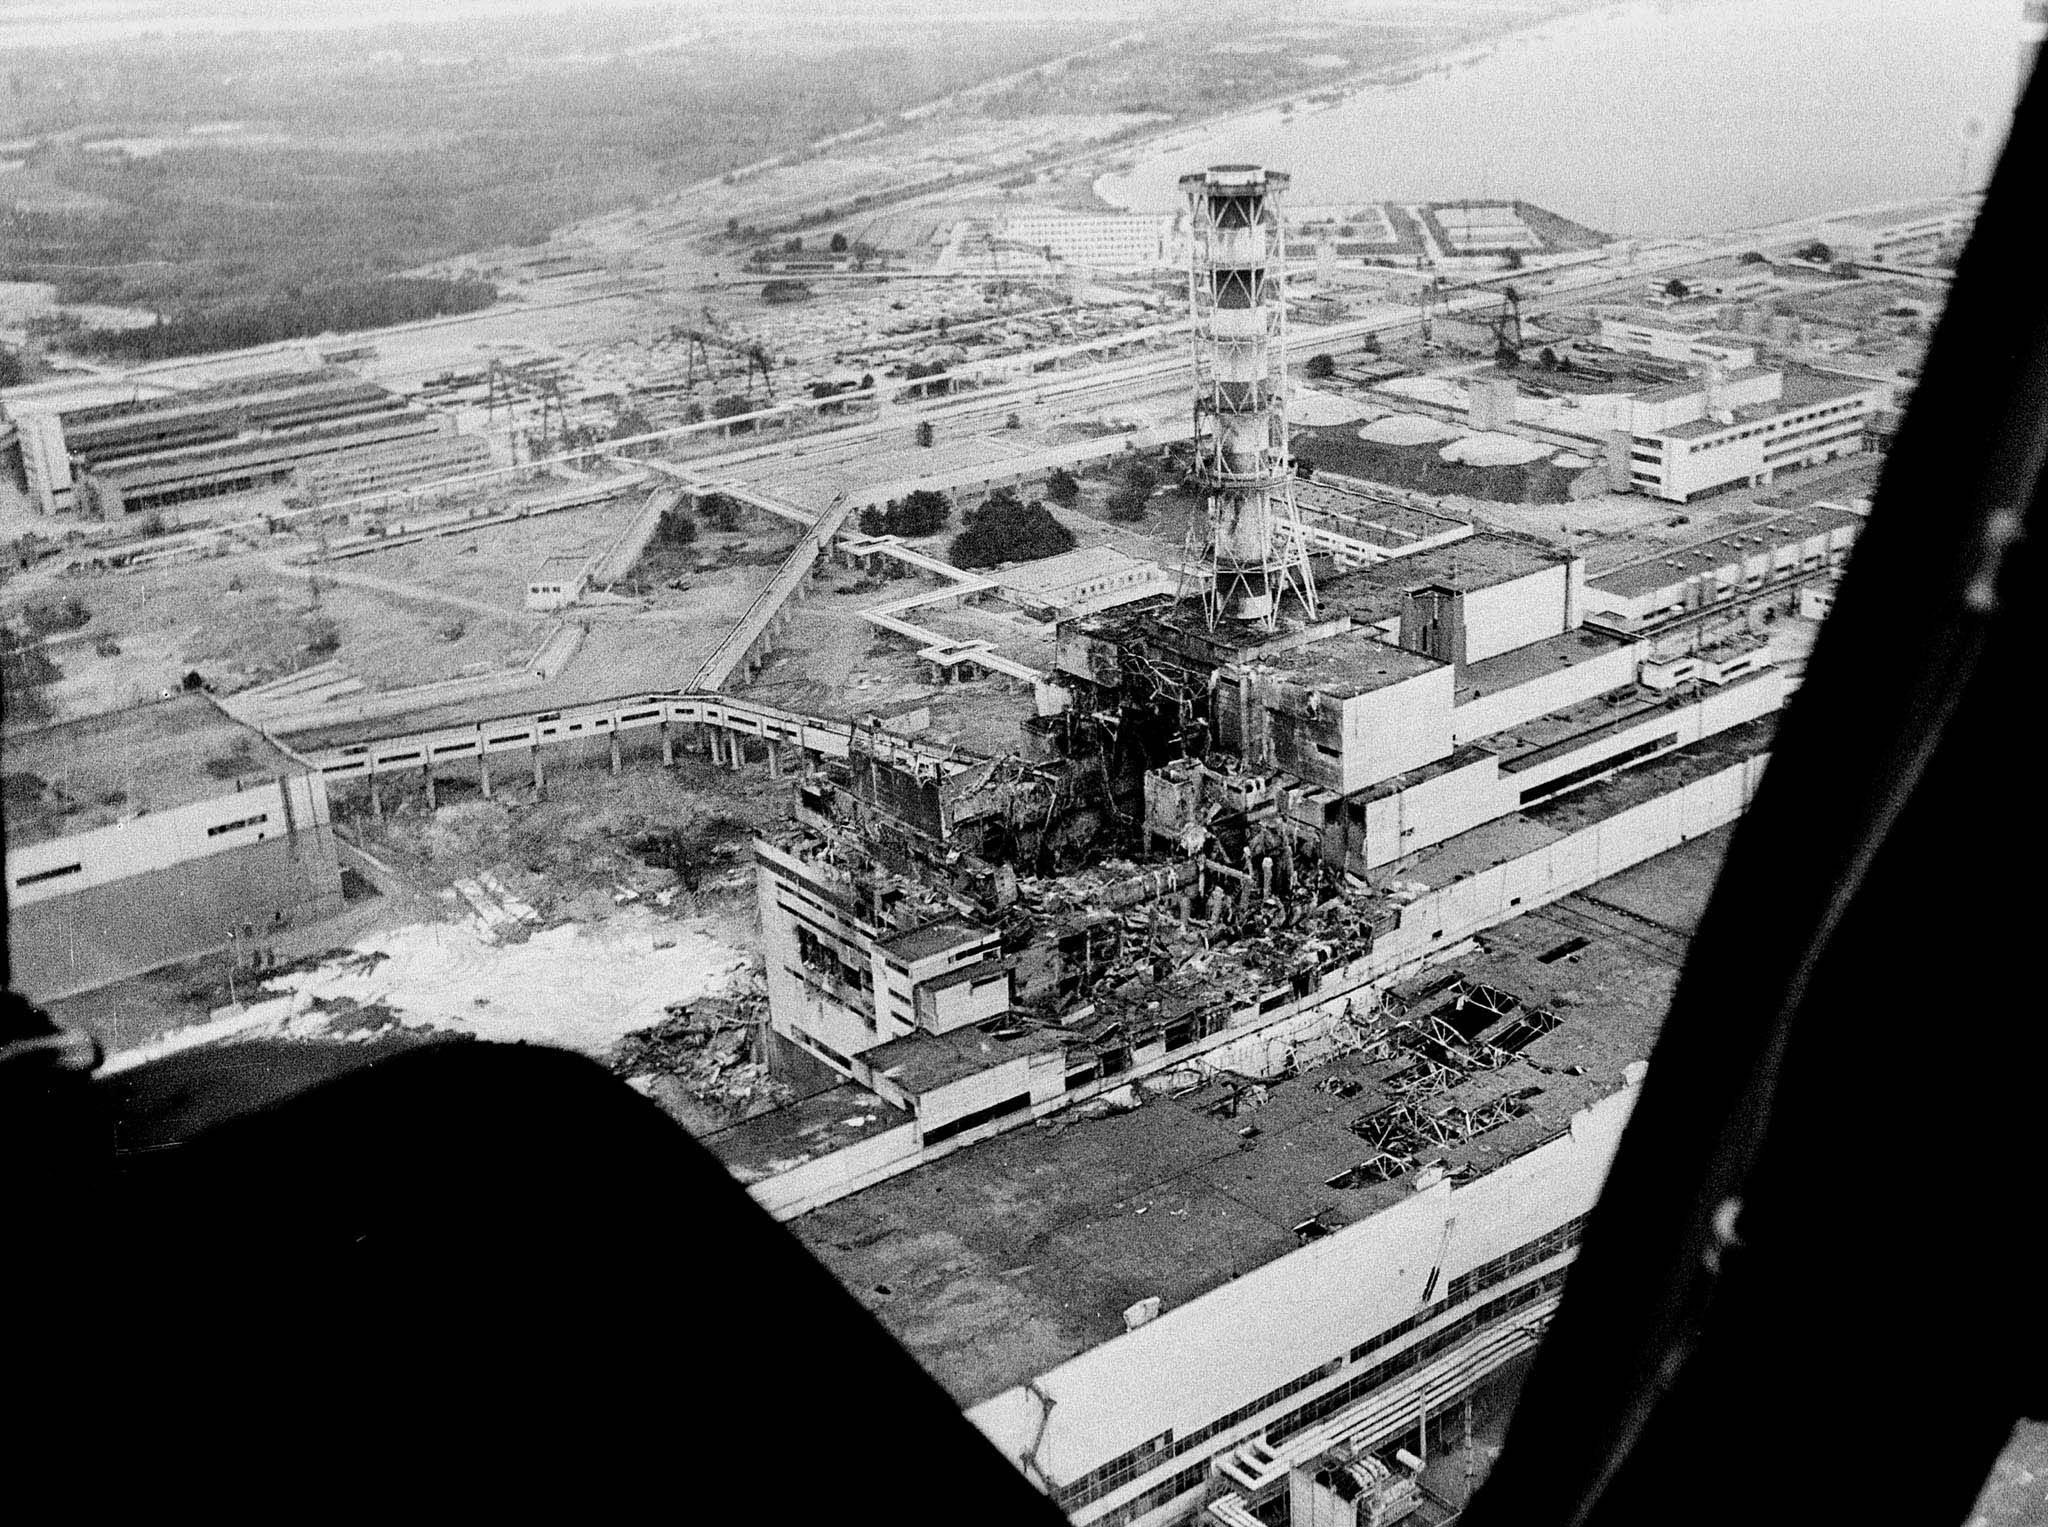 В каком году случилась чернобыльская катастрофа. Припять ЧАЭС 1986. 4 Энергоблок Чернобыльской АЭС 1986. ЧАЭС 26.04.1986. Чернобыль 4 энергоблок до взрыва.